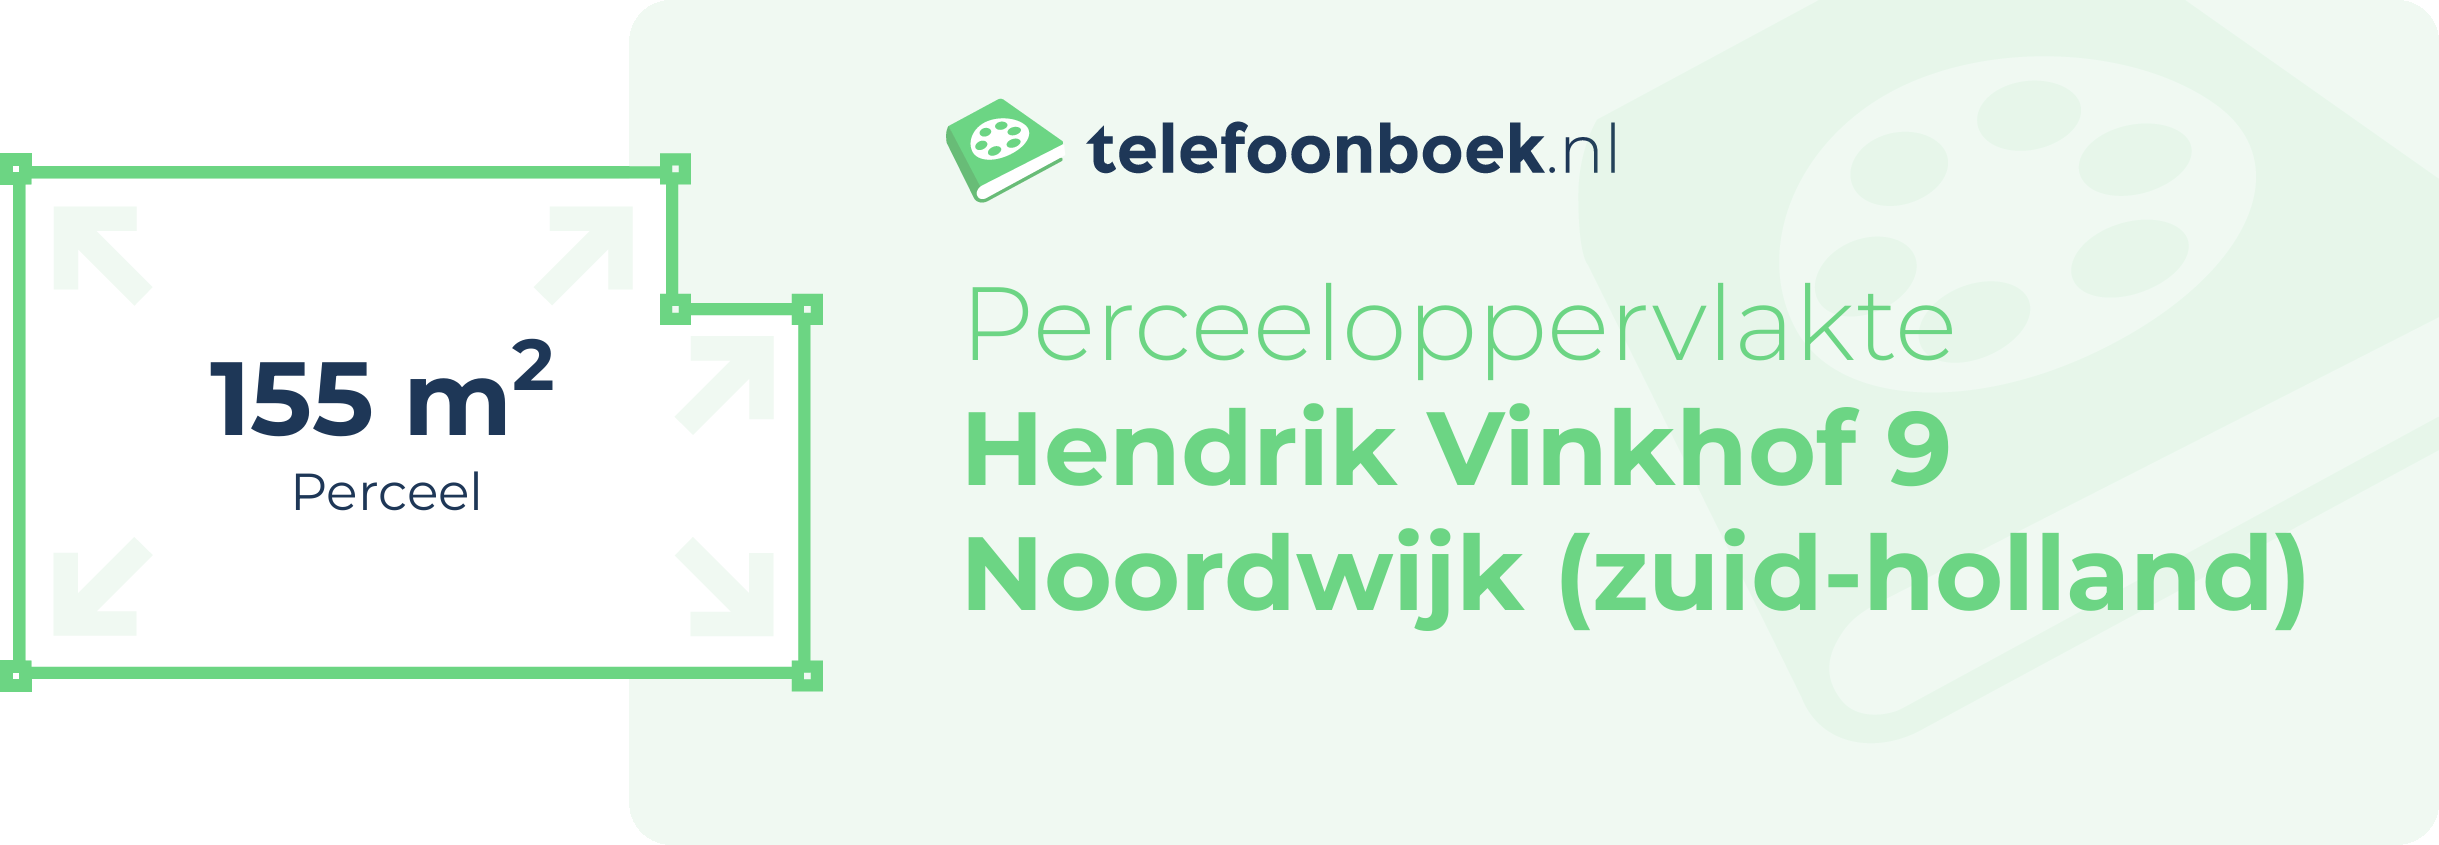 Perceeloppervlakte Hendrik Vinkhof 9 Noordwijk (Zuid-Holland)